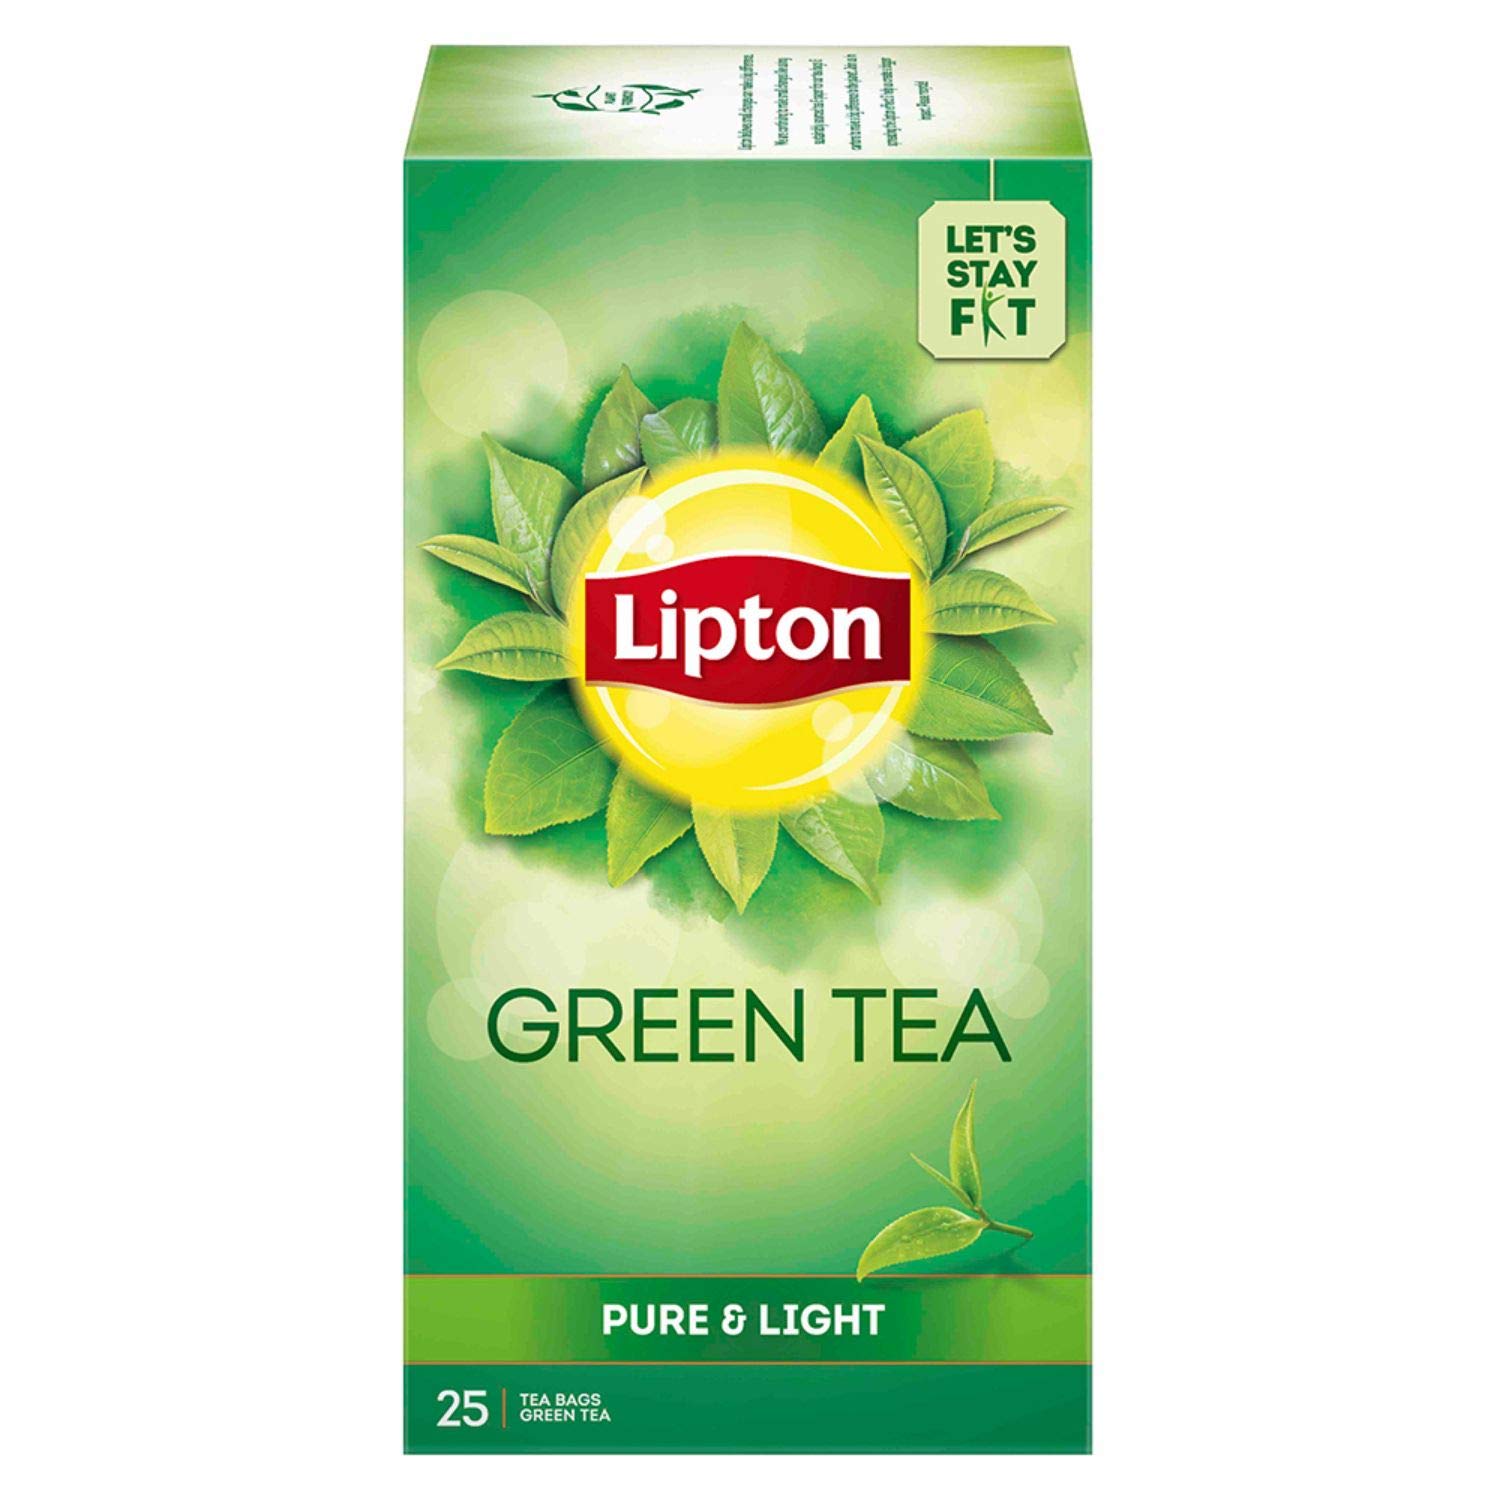 Lipton Green Tea Pure and Light Tea Bags, 25 Tea Bags